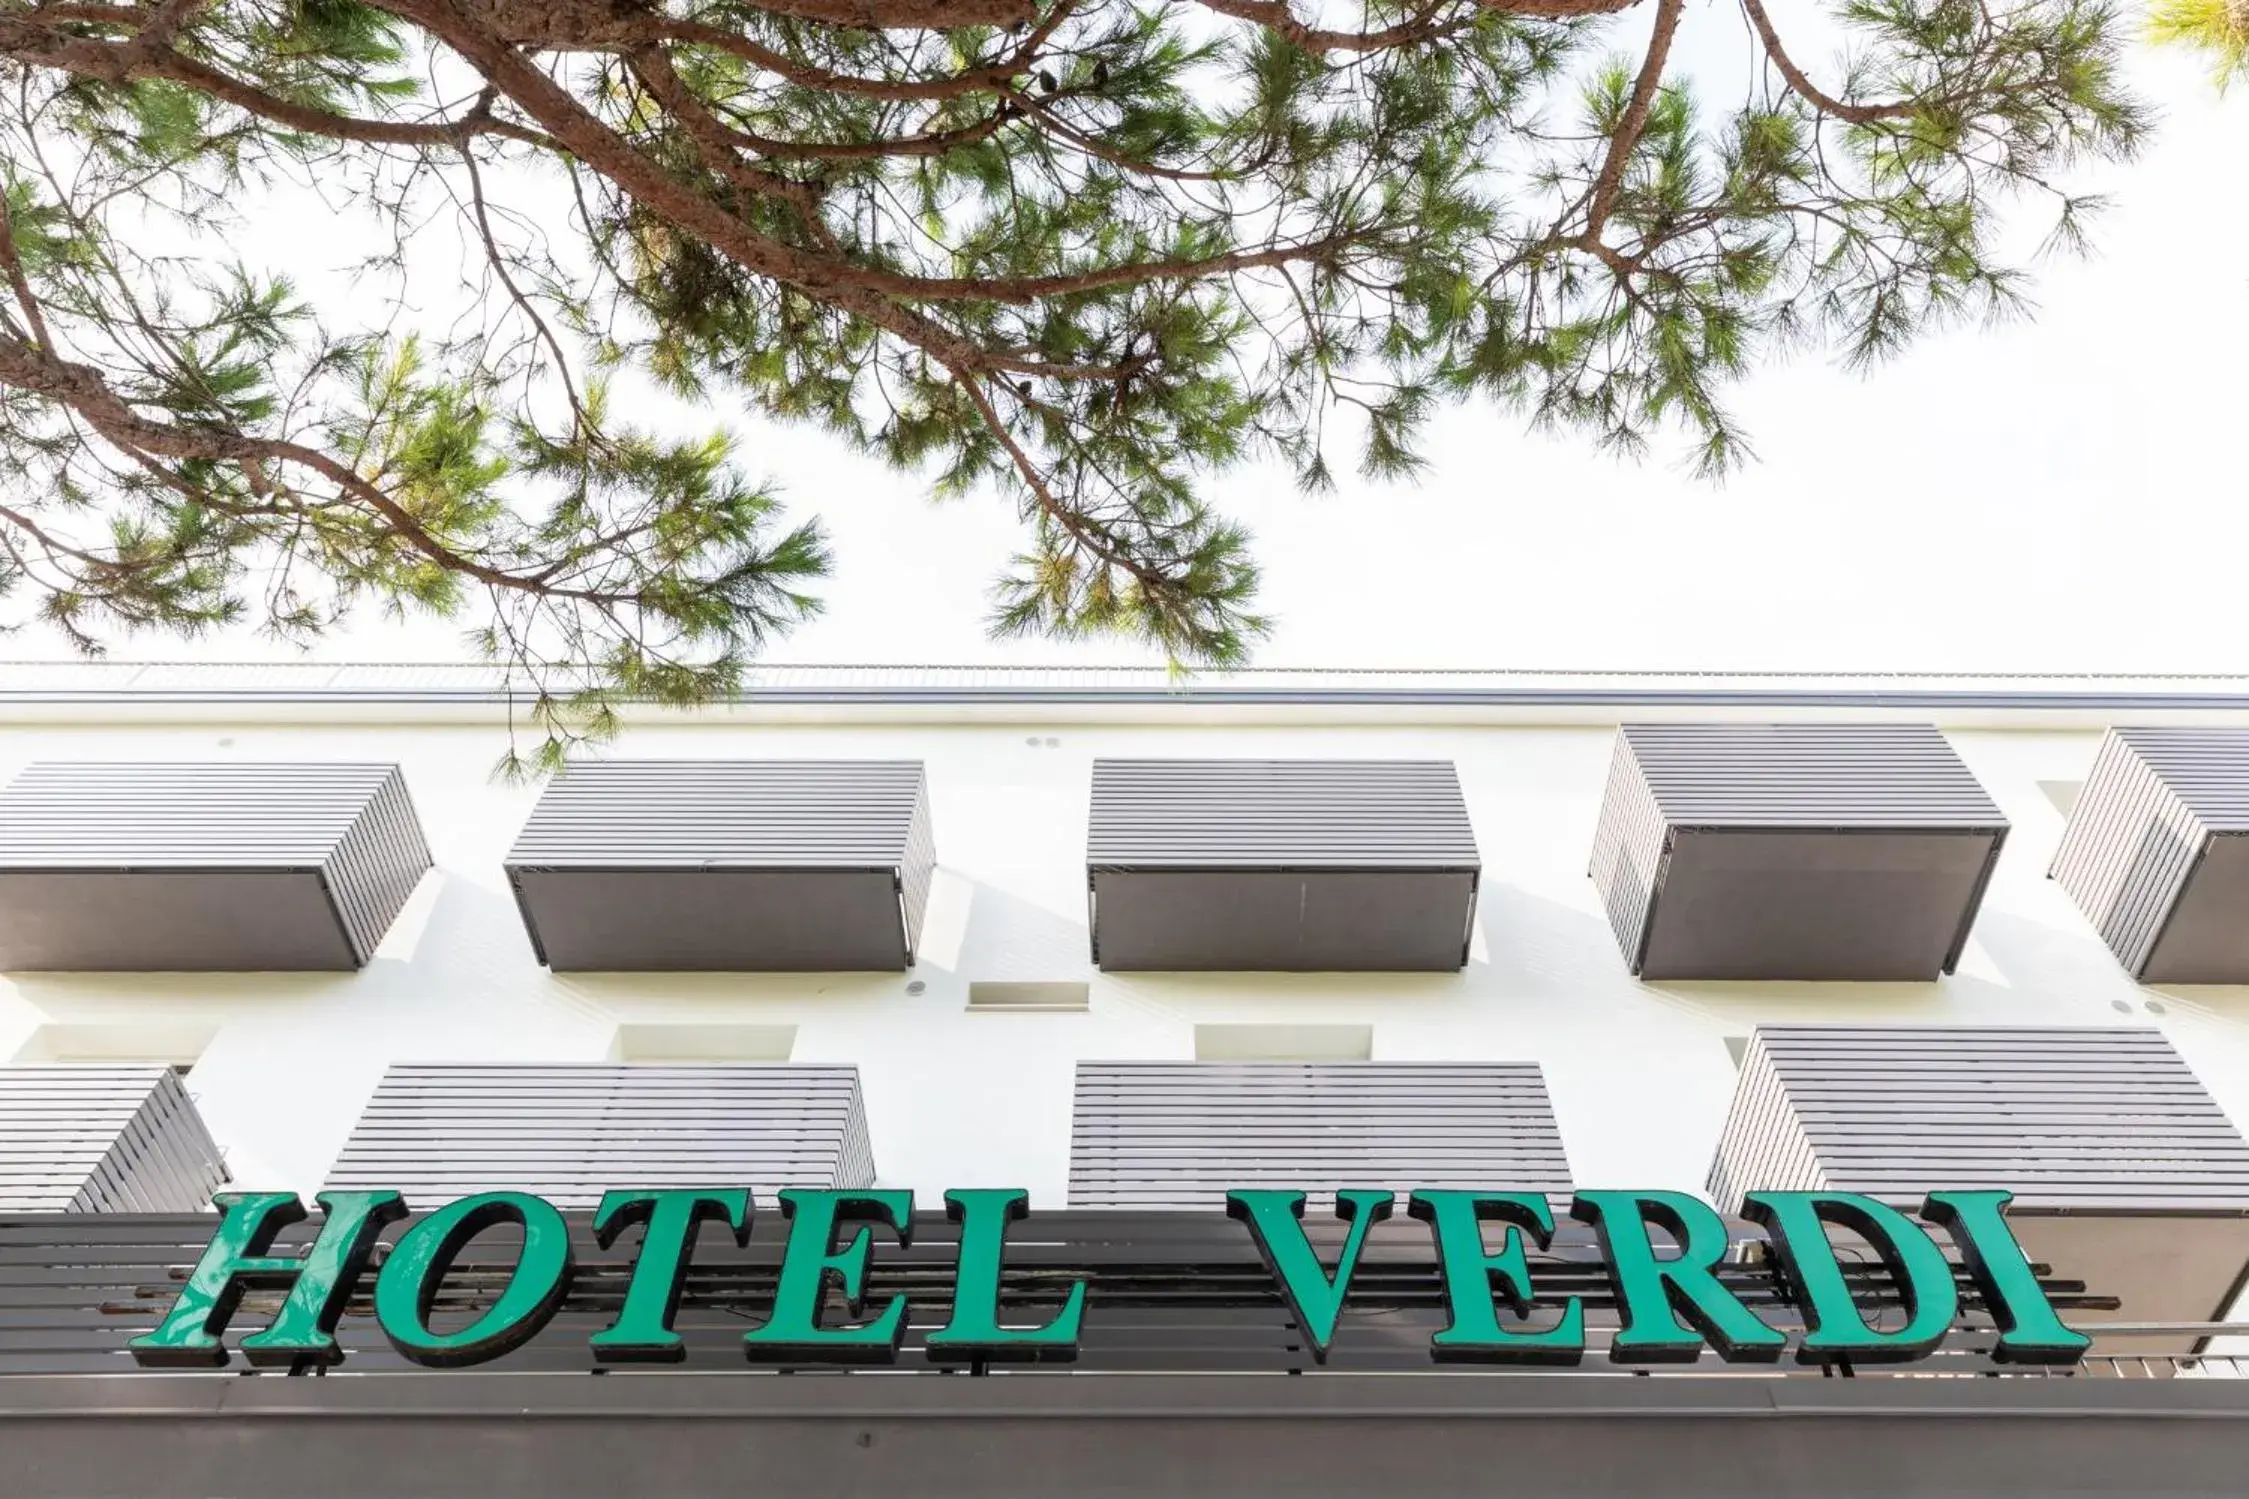 Property Building in Hotel Verdi